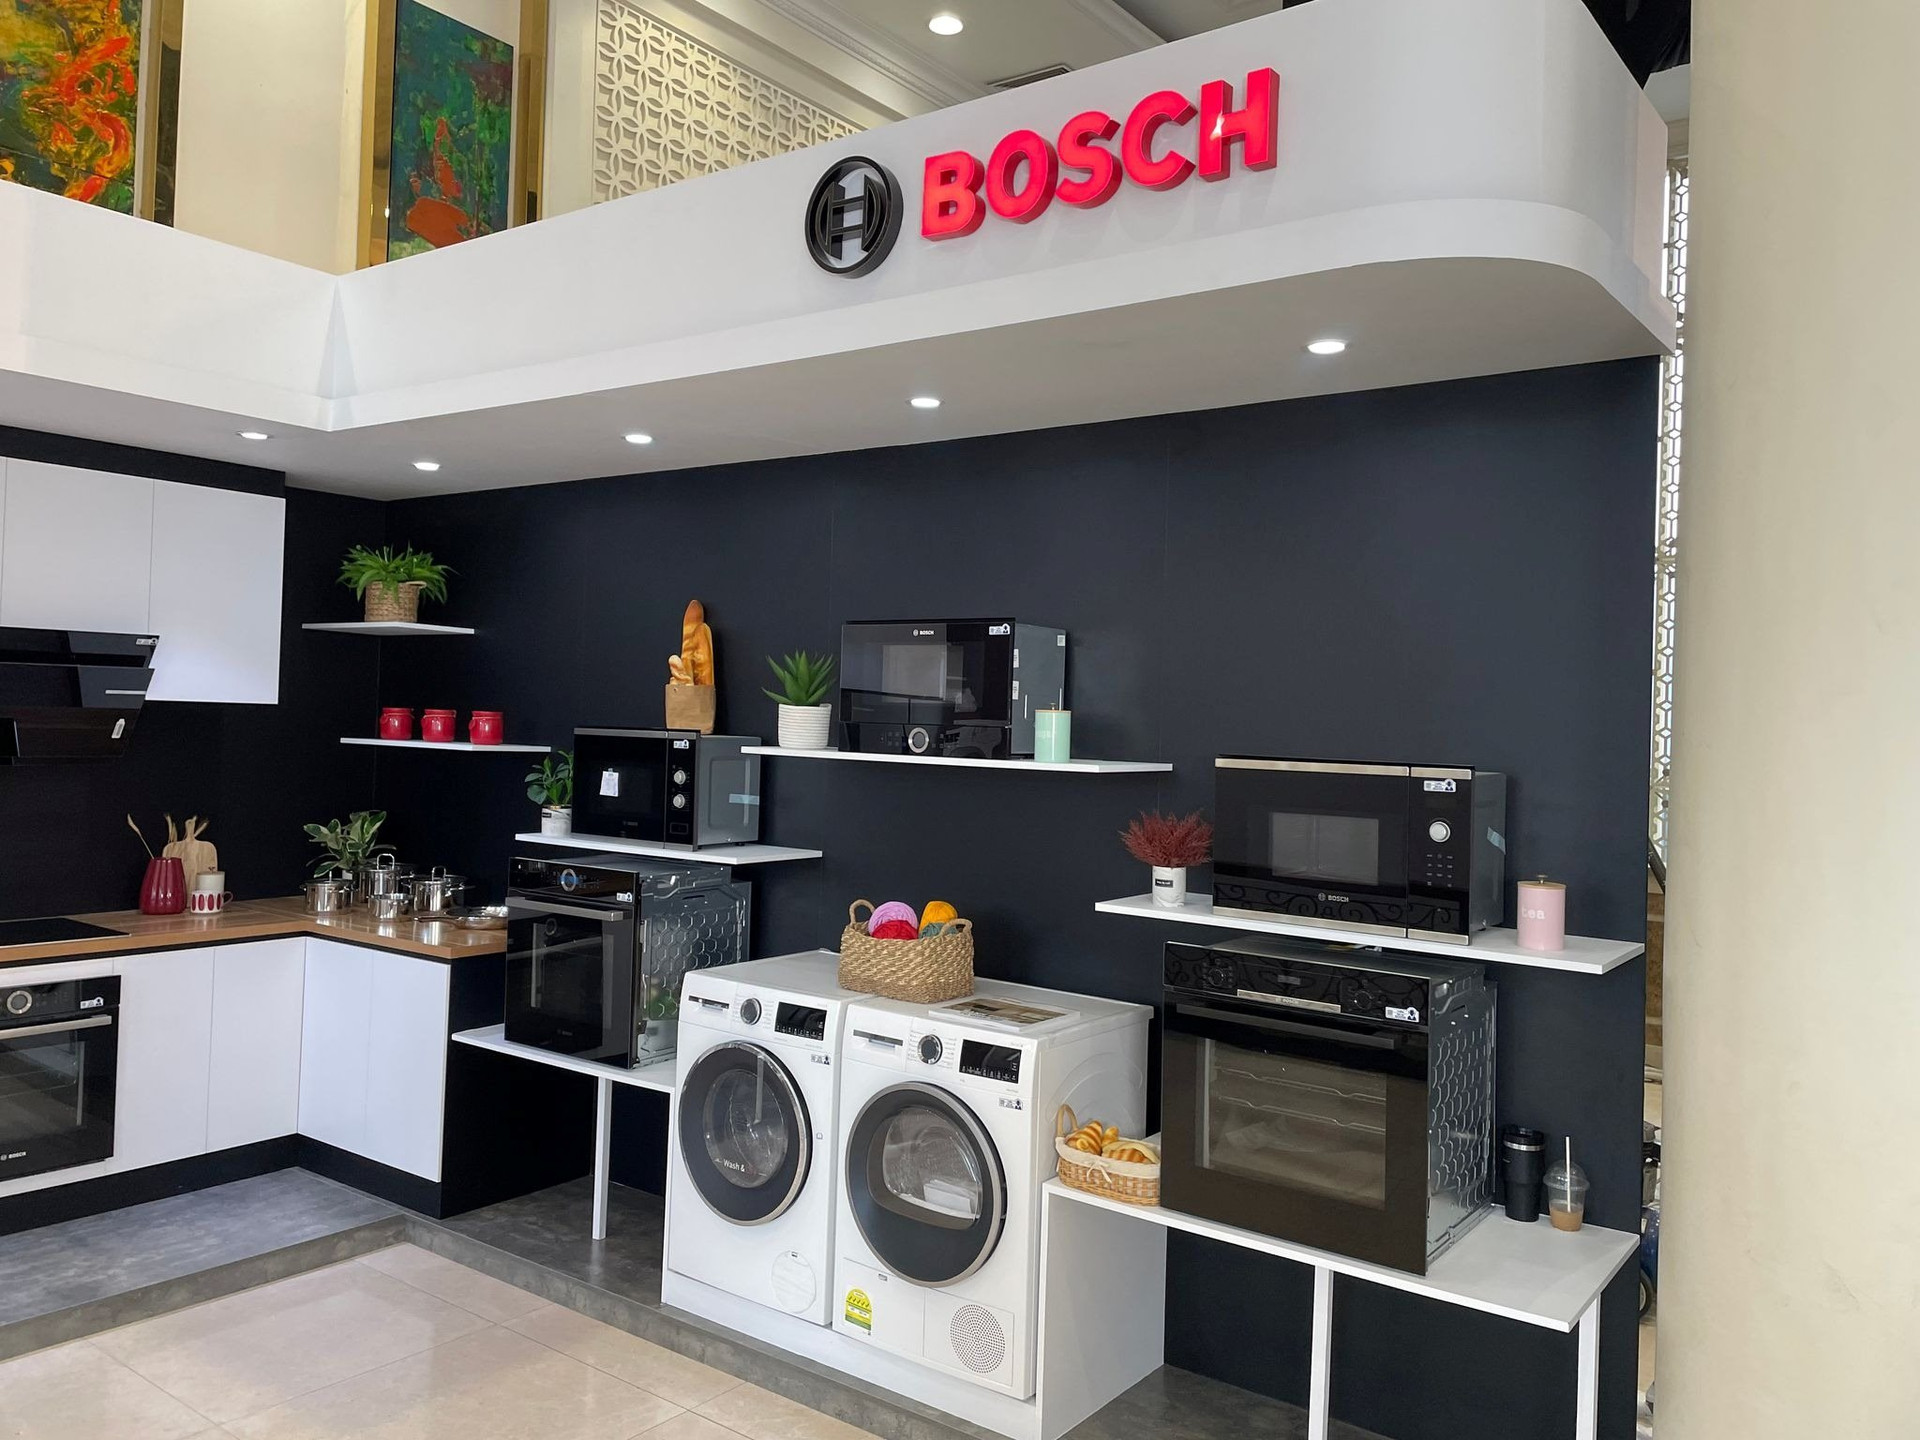 Sếp Bosch: ’25 triệu hộ dân, chỉ 1% có máy rửa bát, thị trường Việt Nam quá tiềm năng’